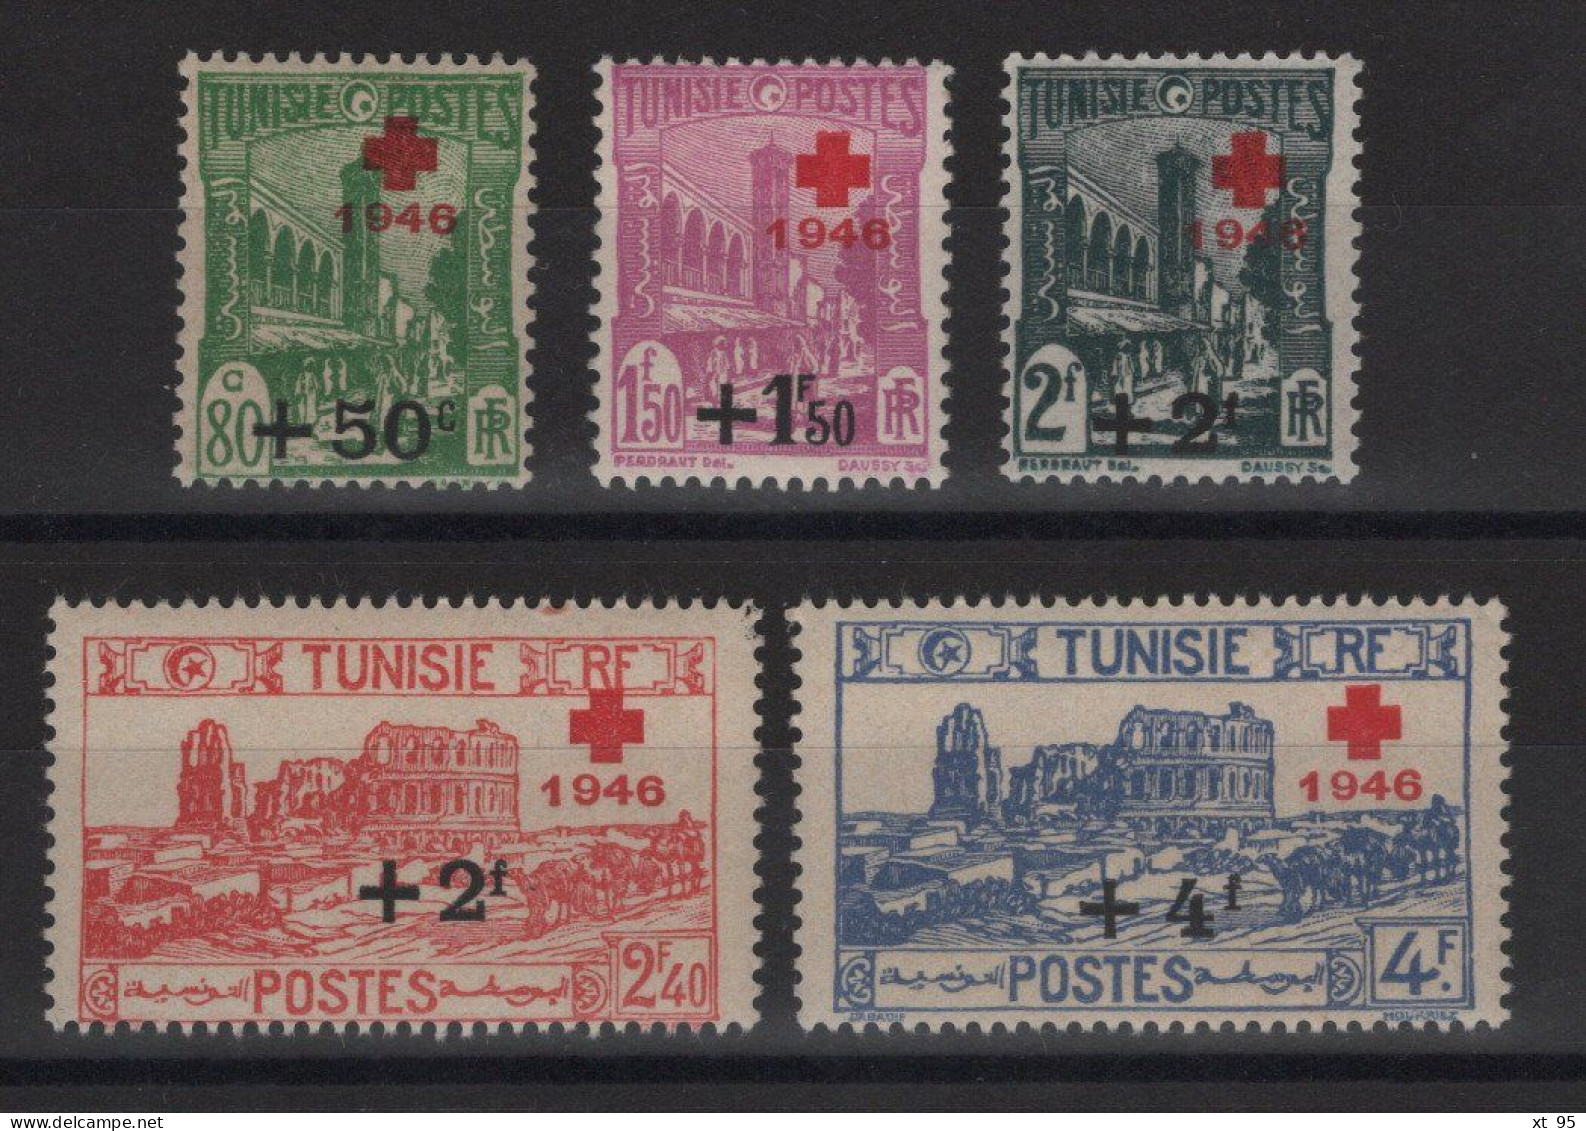 Tunisie - N°305 à 309 - ** Neufs Sans Charniere - Cote 7.50€ - Tunisia